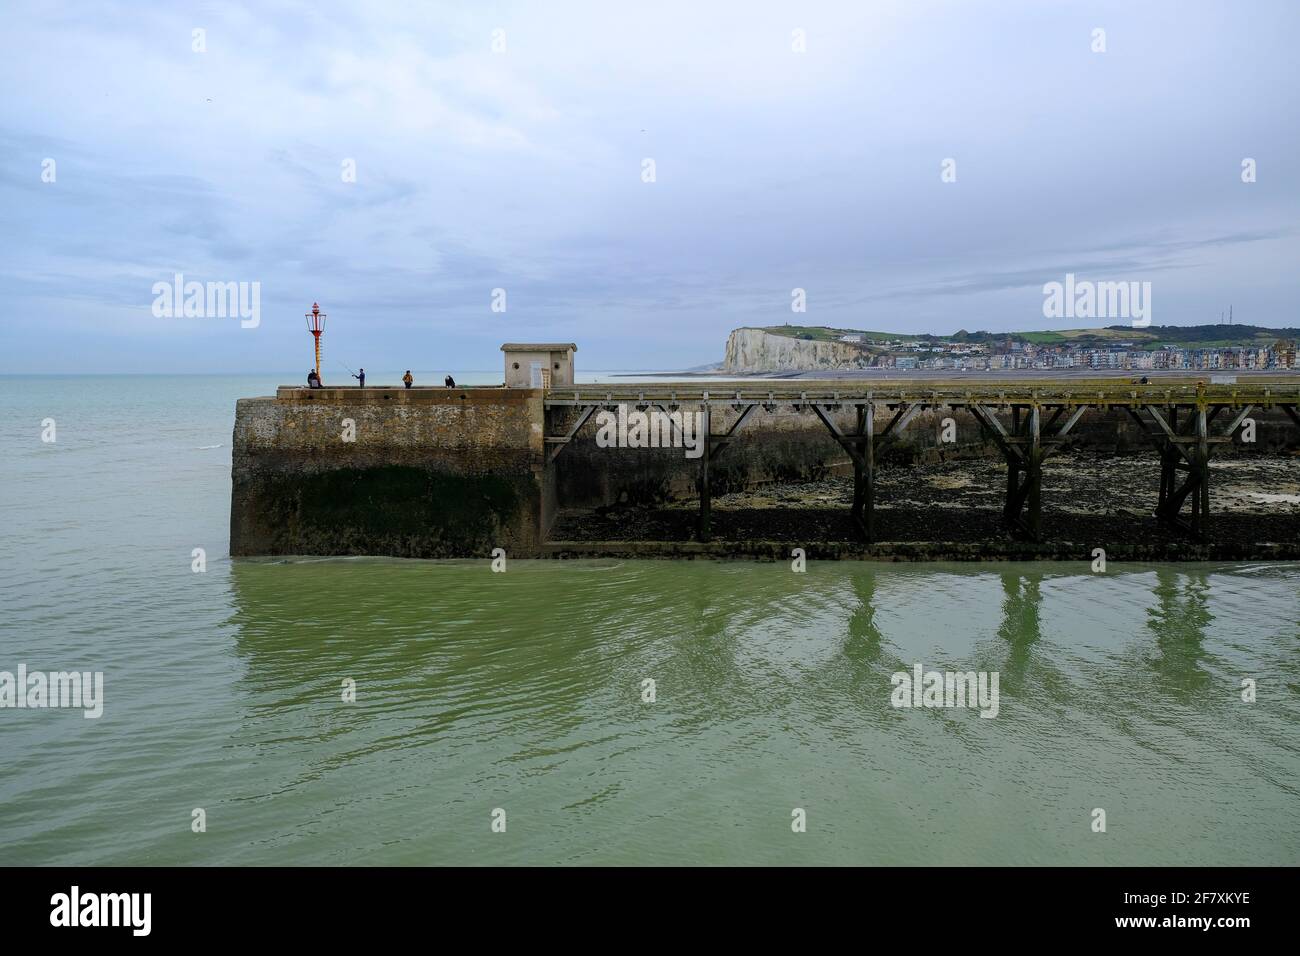 FRA, Frankreich, Normandie, Le Treport, 20.10.2019: Blick von der Hafenstadt Le Treport an der Kanalkueste auf die Hafenmole von Mers-les-Bain auf der Stock Photo